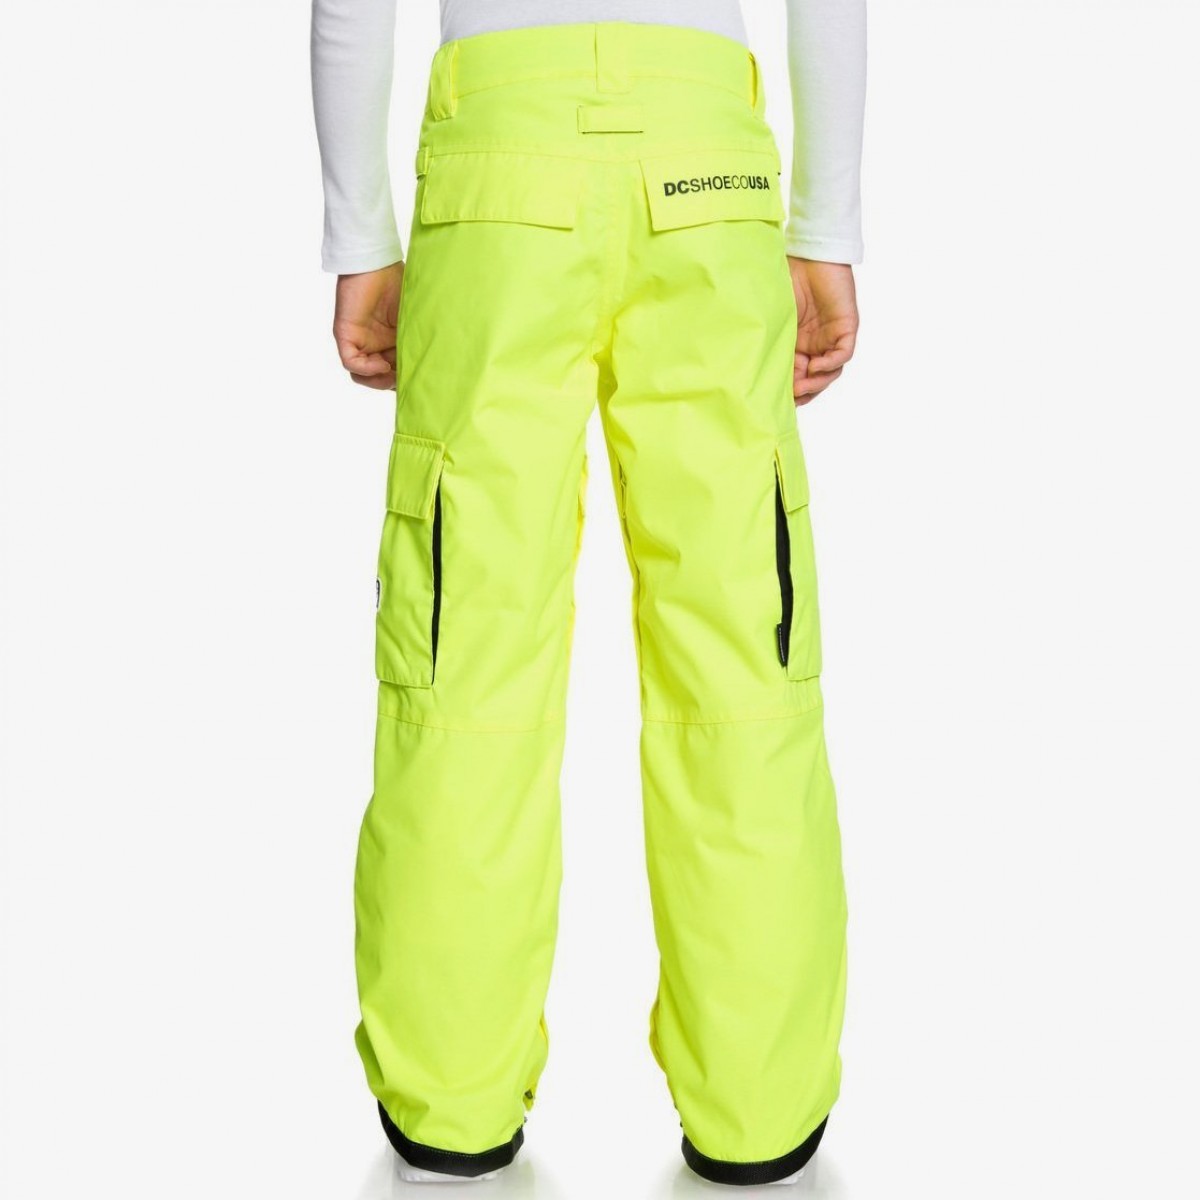 12 DC Banshee Snowboard Pants Kids Sz L Safety Yellow